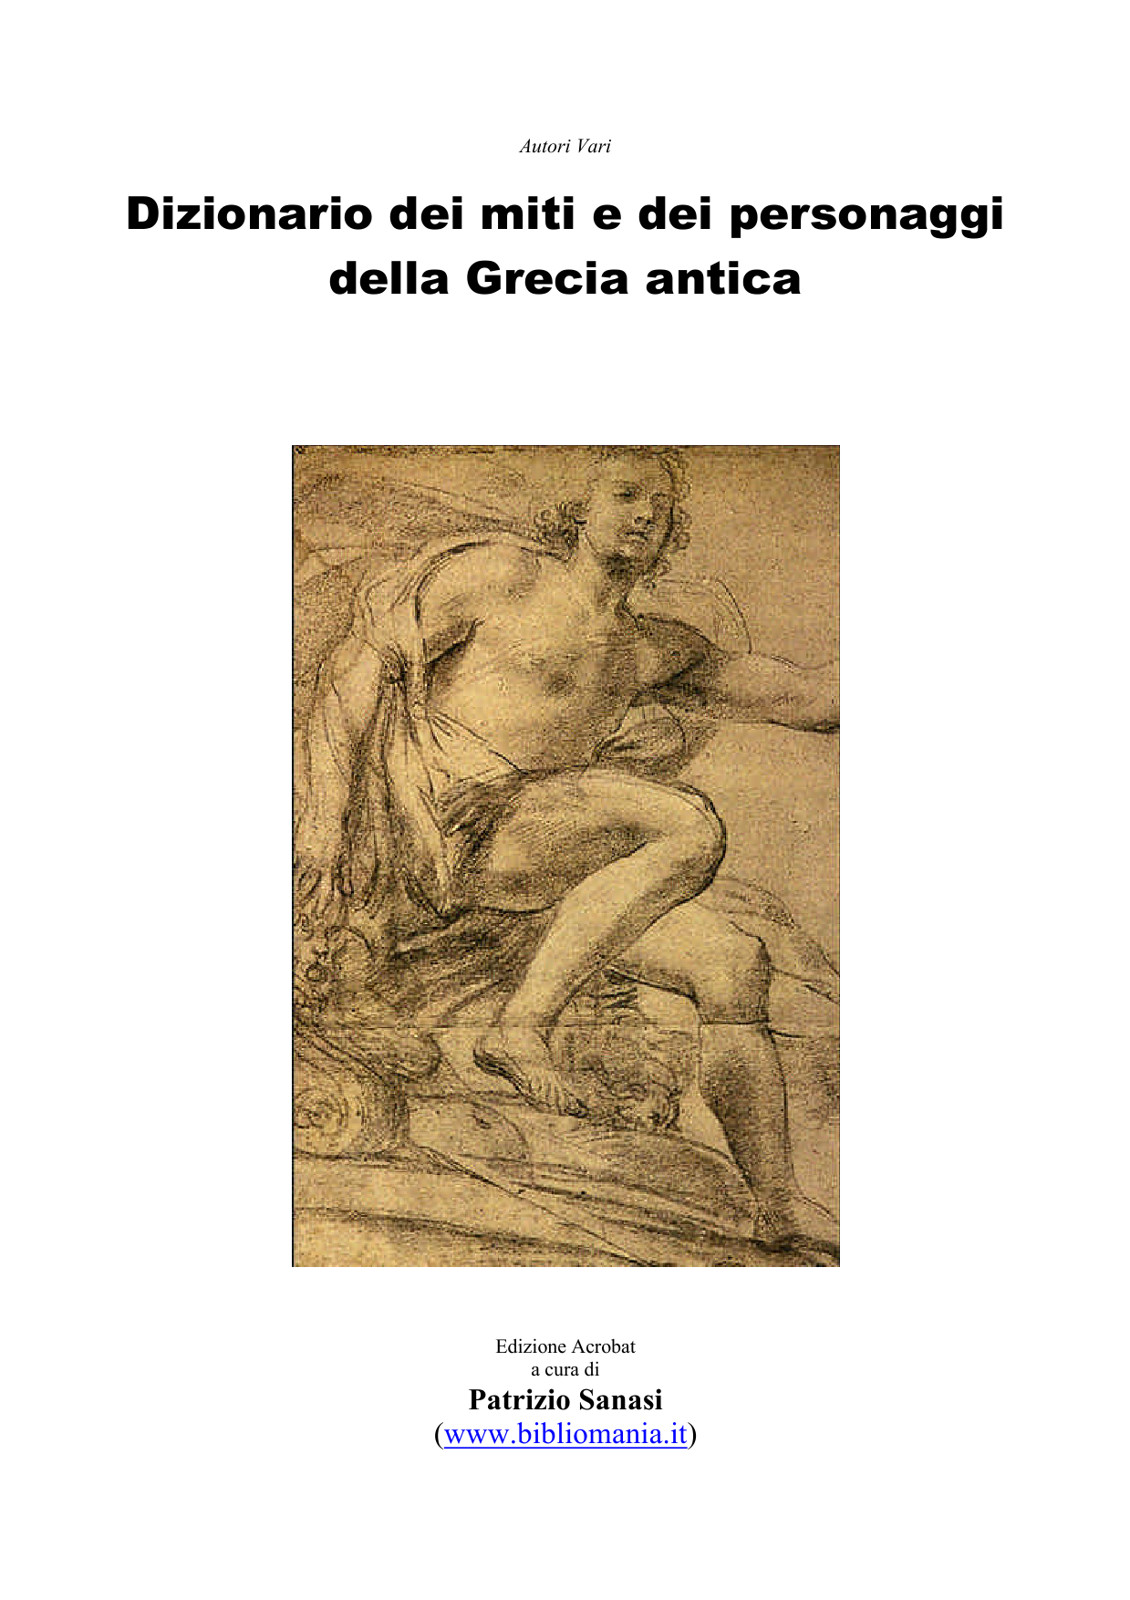 Dizionario_miti_e_personaggi_Grecia_antica.doc